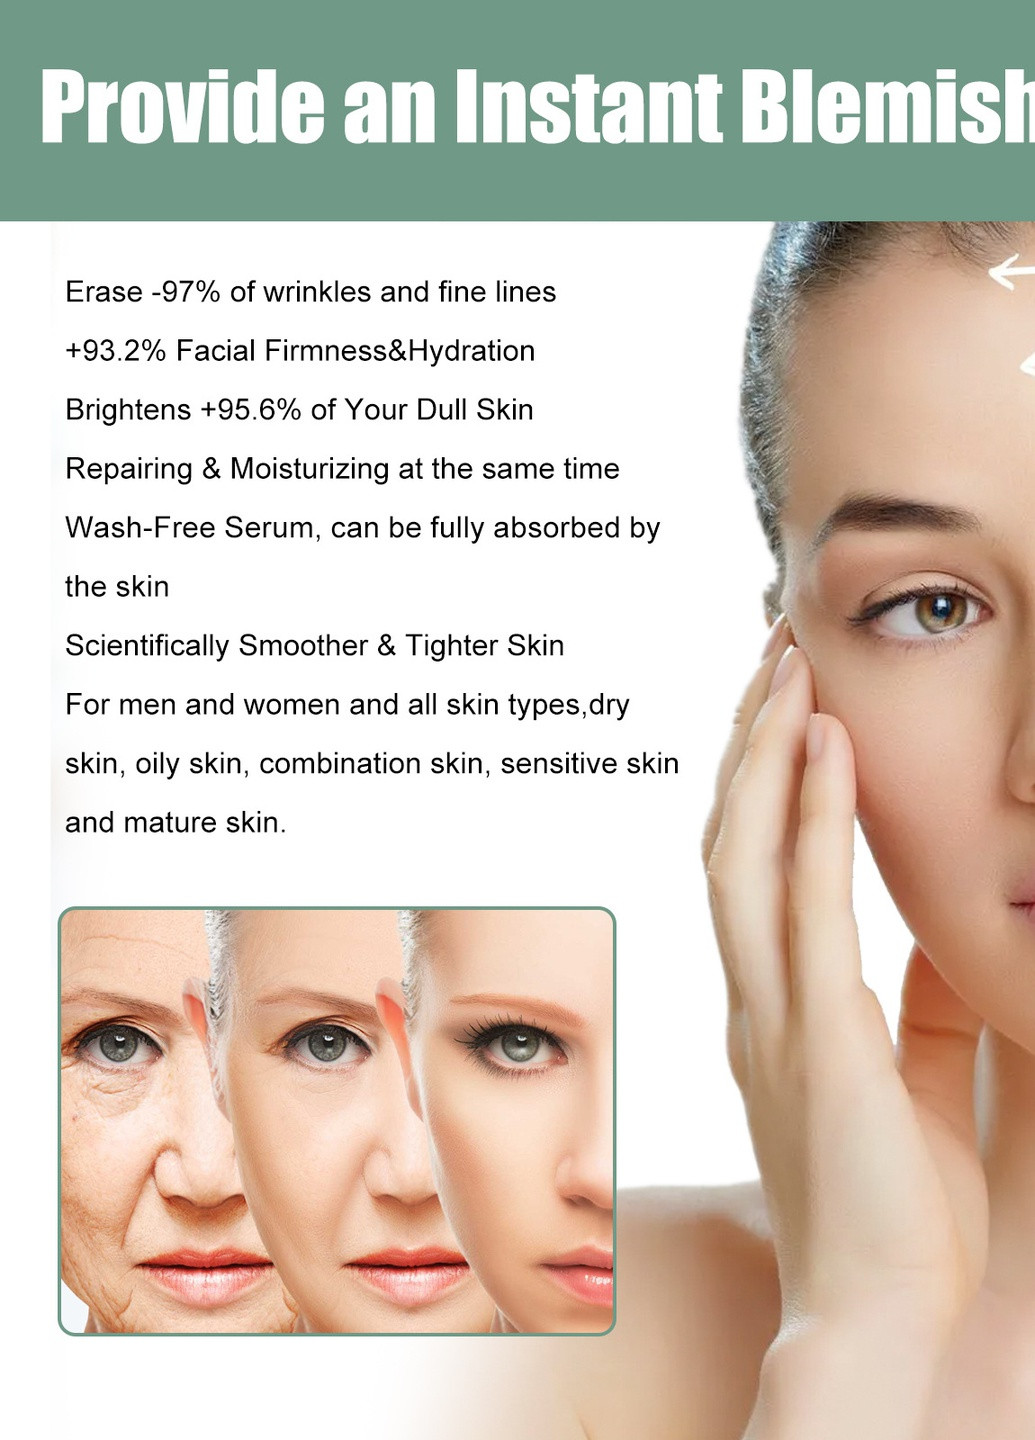 Сыворотка EELHOE Collagen Anti-Aging Serum против старения осветляет тонкие линии морщин, увлажняет, восстанавливает No Brand (259776669)